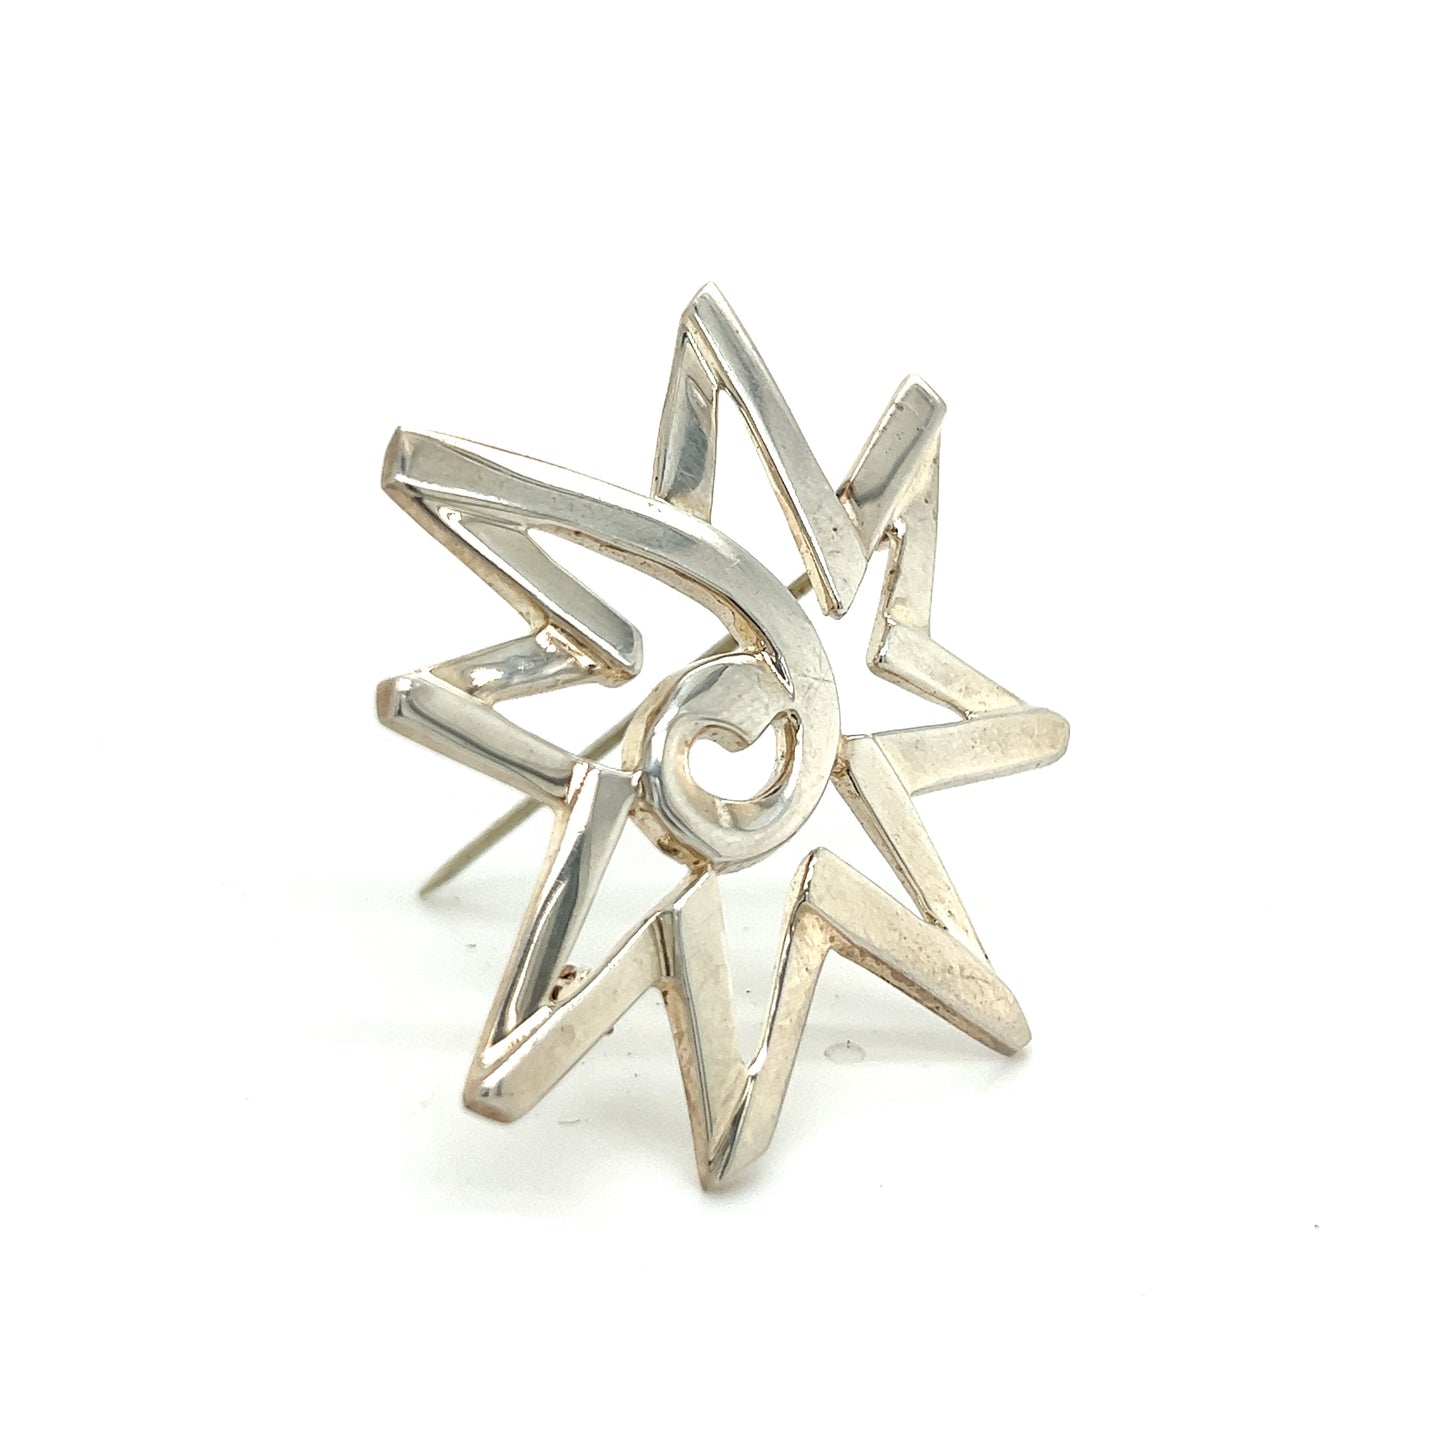 Tiffany & Co Estate Start Burst Brooch Pin Sterling Silver TIF303 - Certified Fine Jewelry